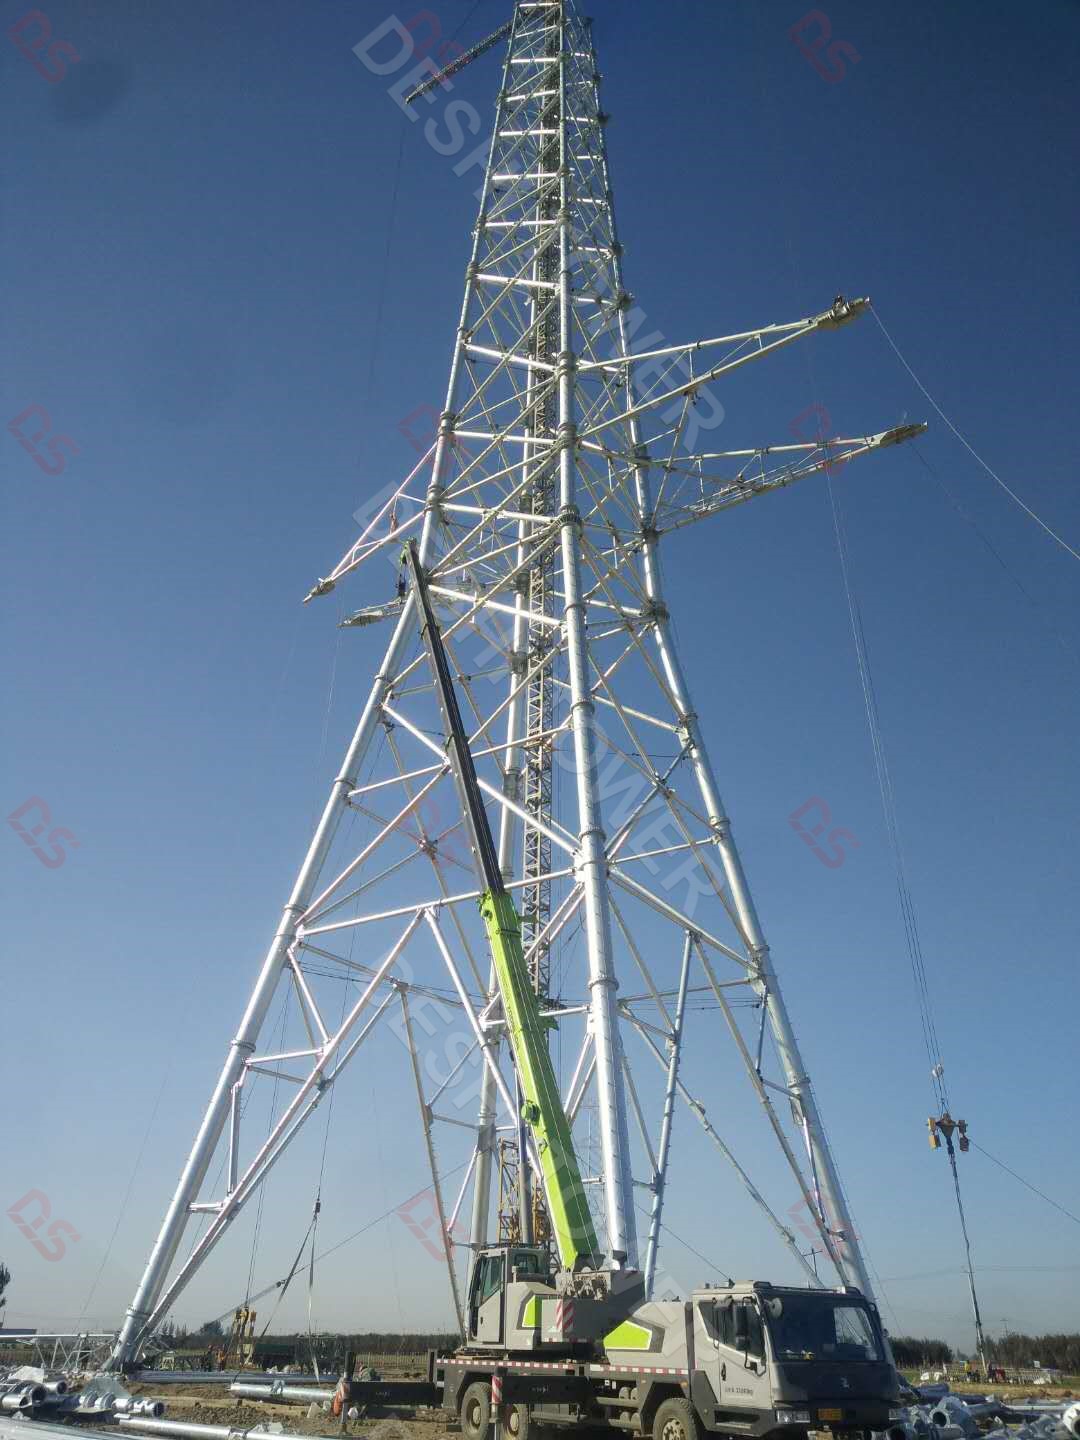 Transmission lattice tubular tower